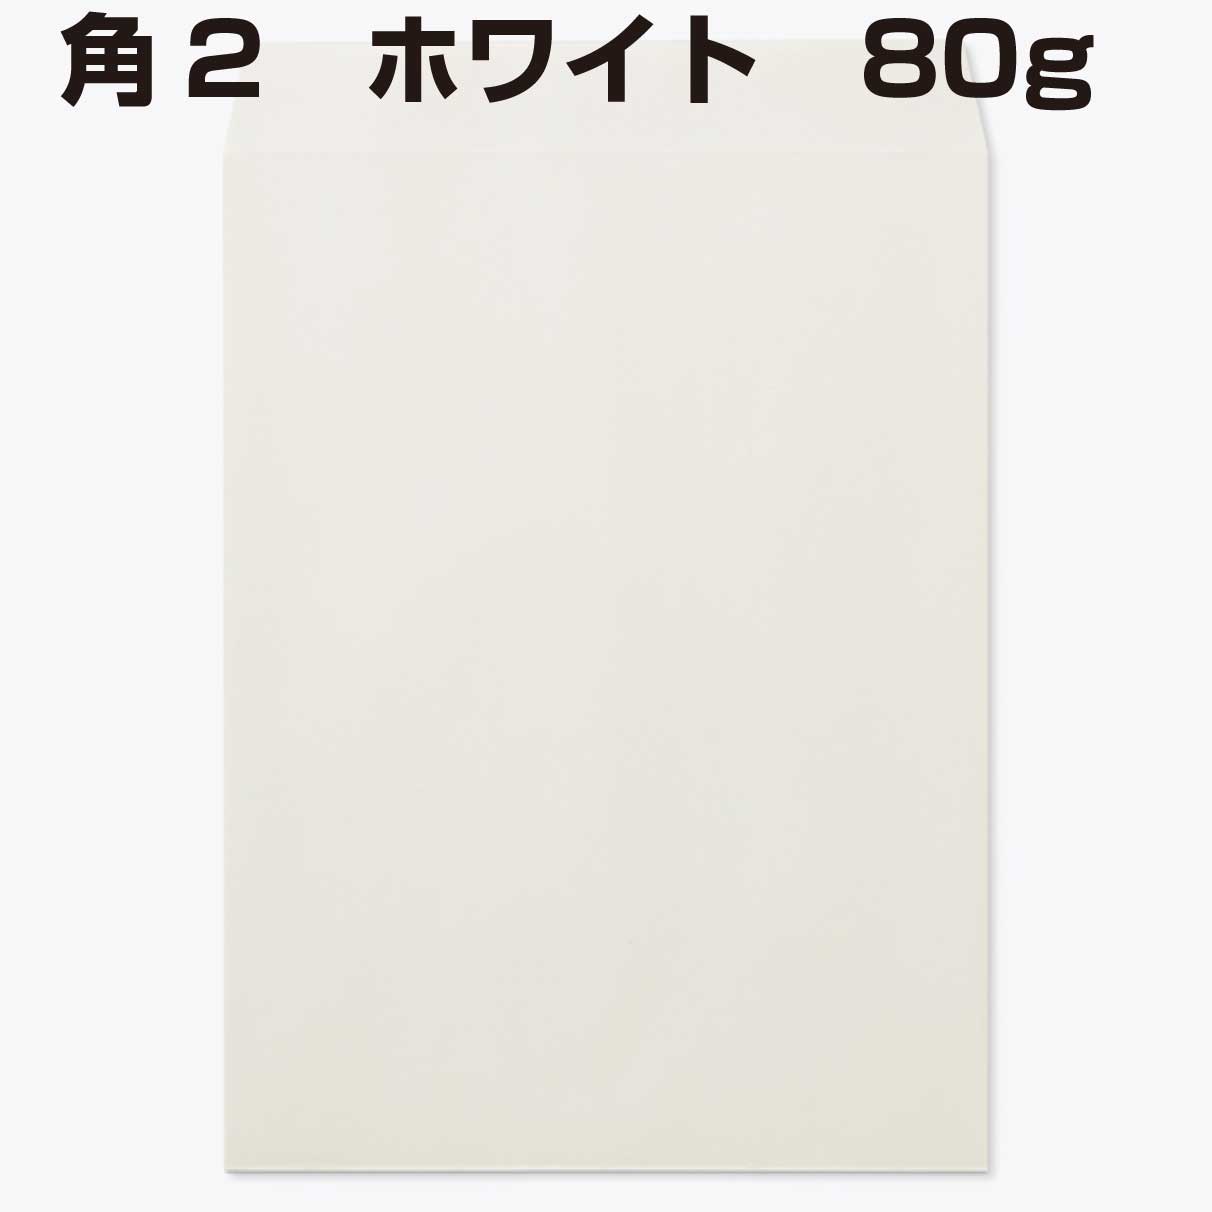 晒クラフトを使用した強度のある封筒です 封筒 角2 専門ショップ 白色封筒 ホワイト a4 80g 2022モデル 500枚